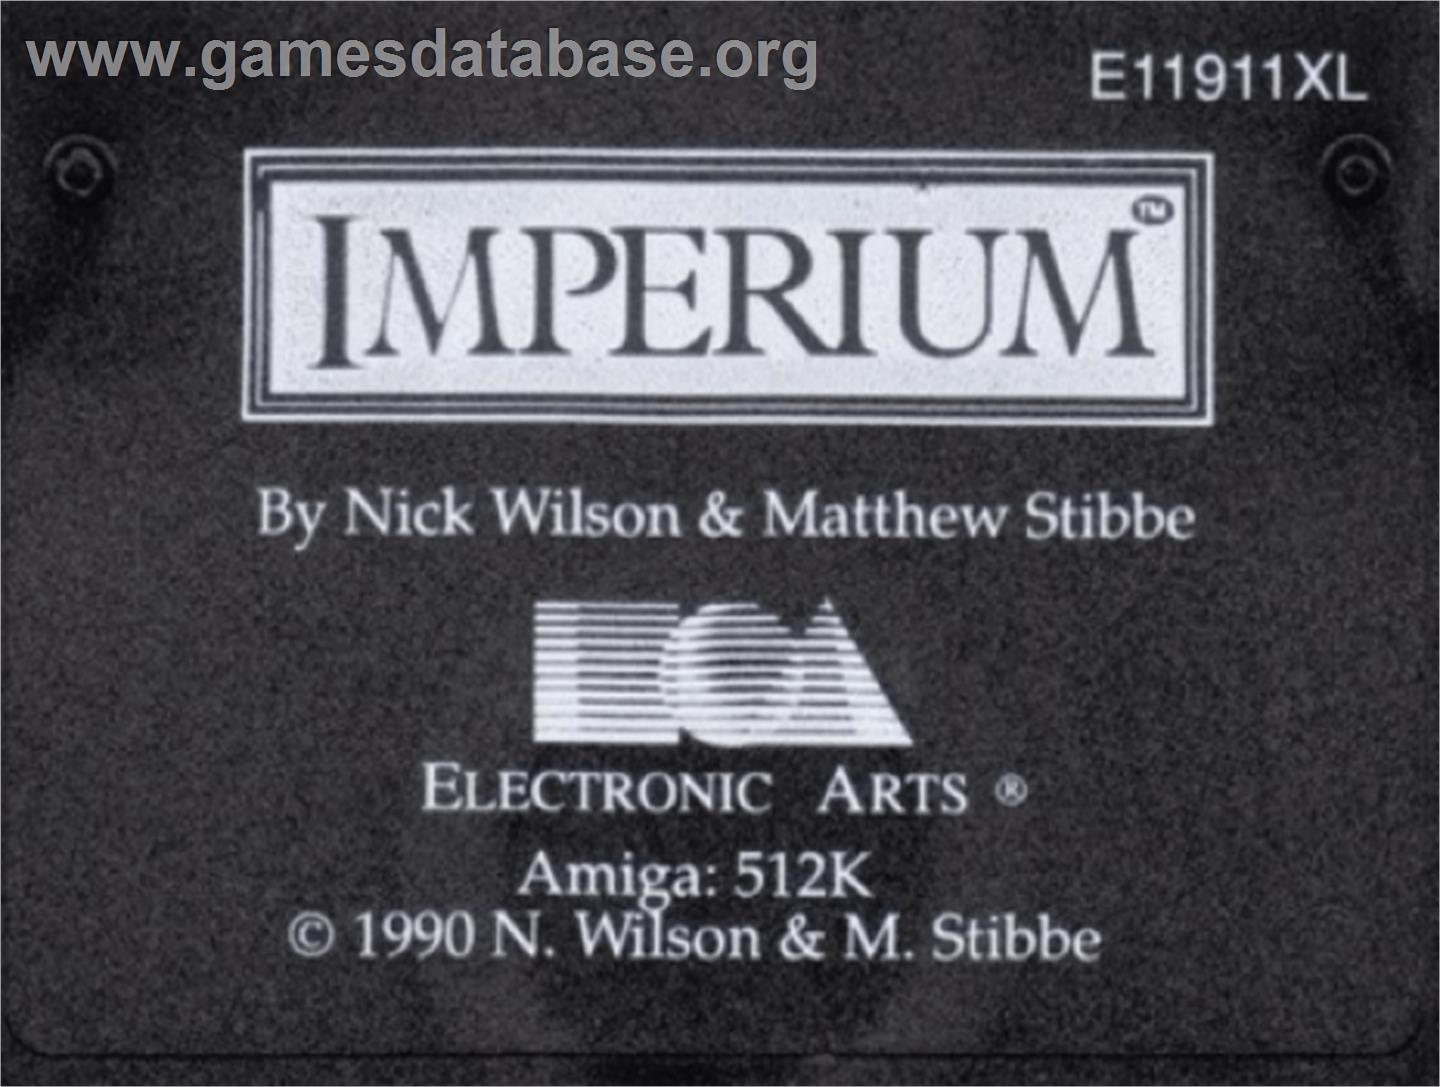 Imperium - Commodore Amiga - Artwork - Cartridge Top